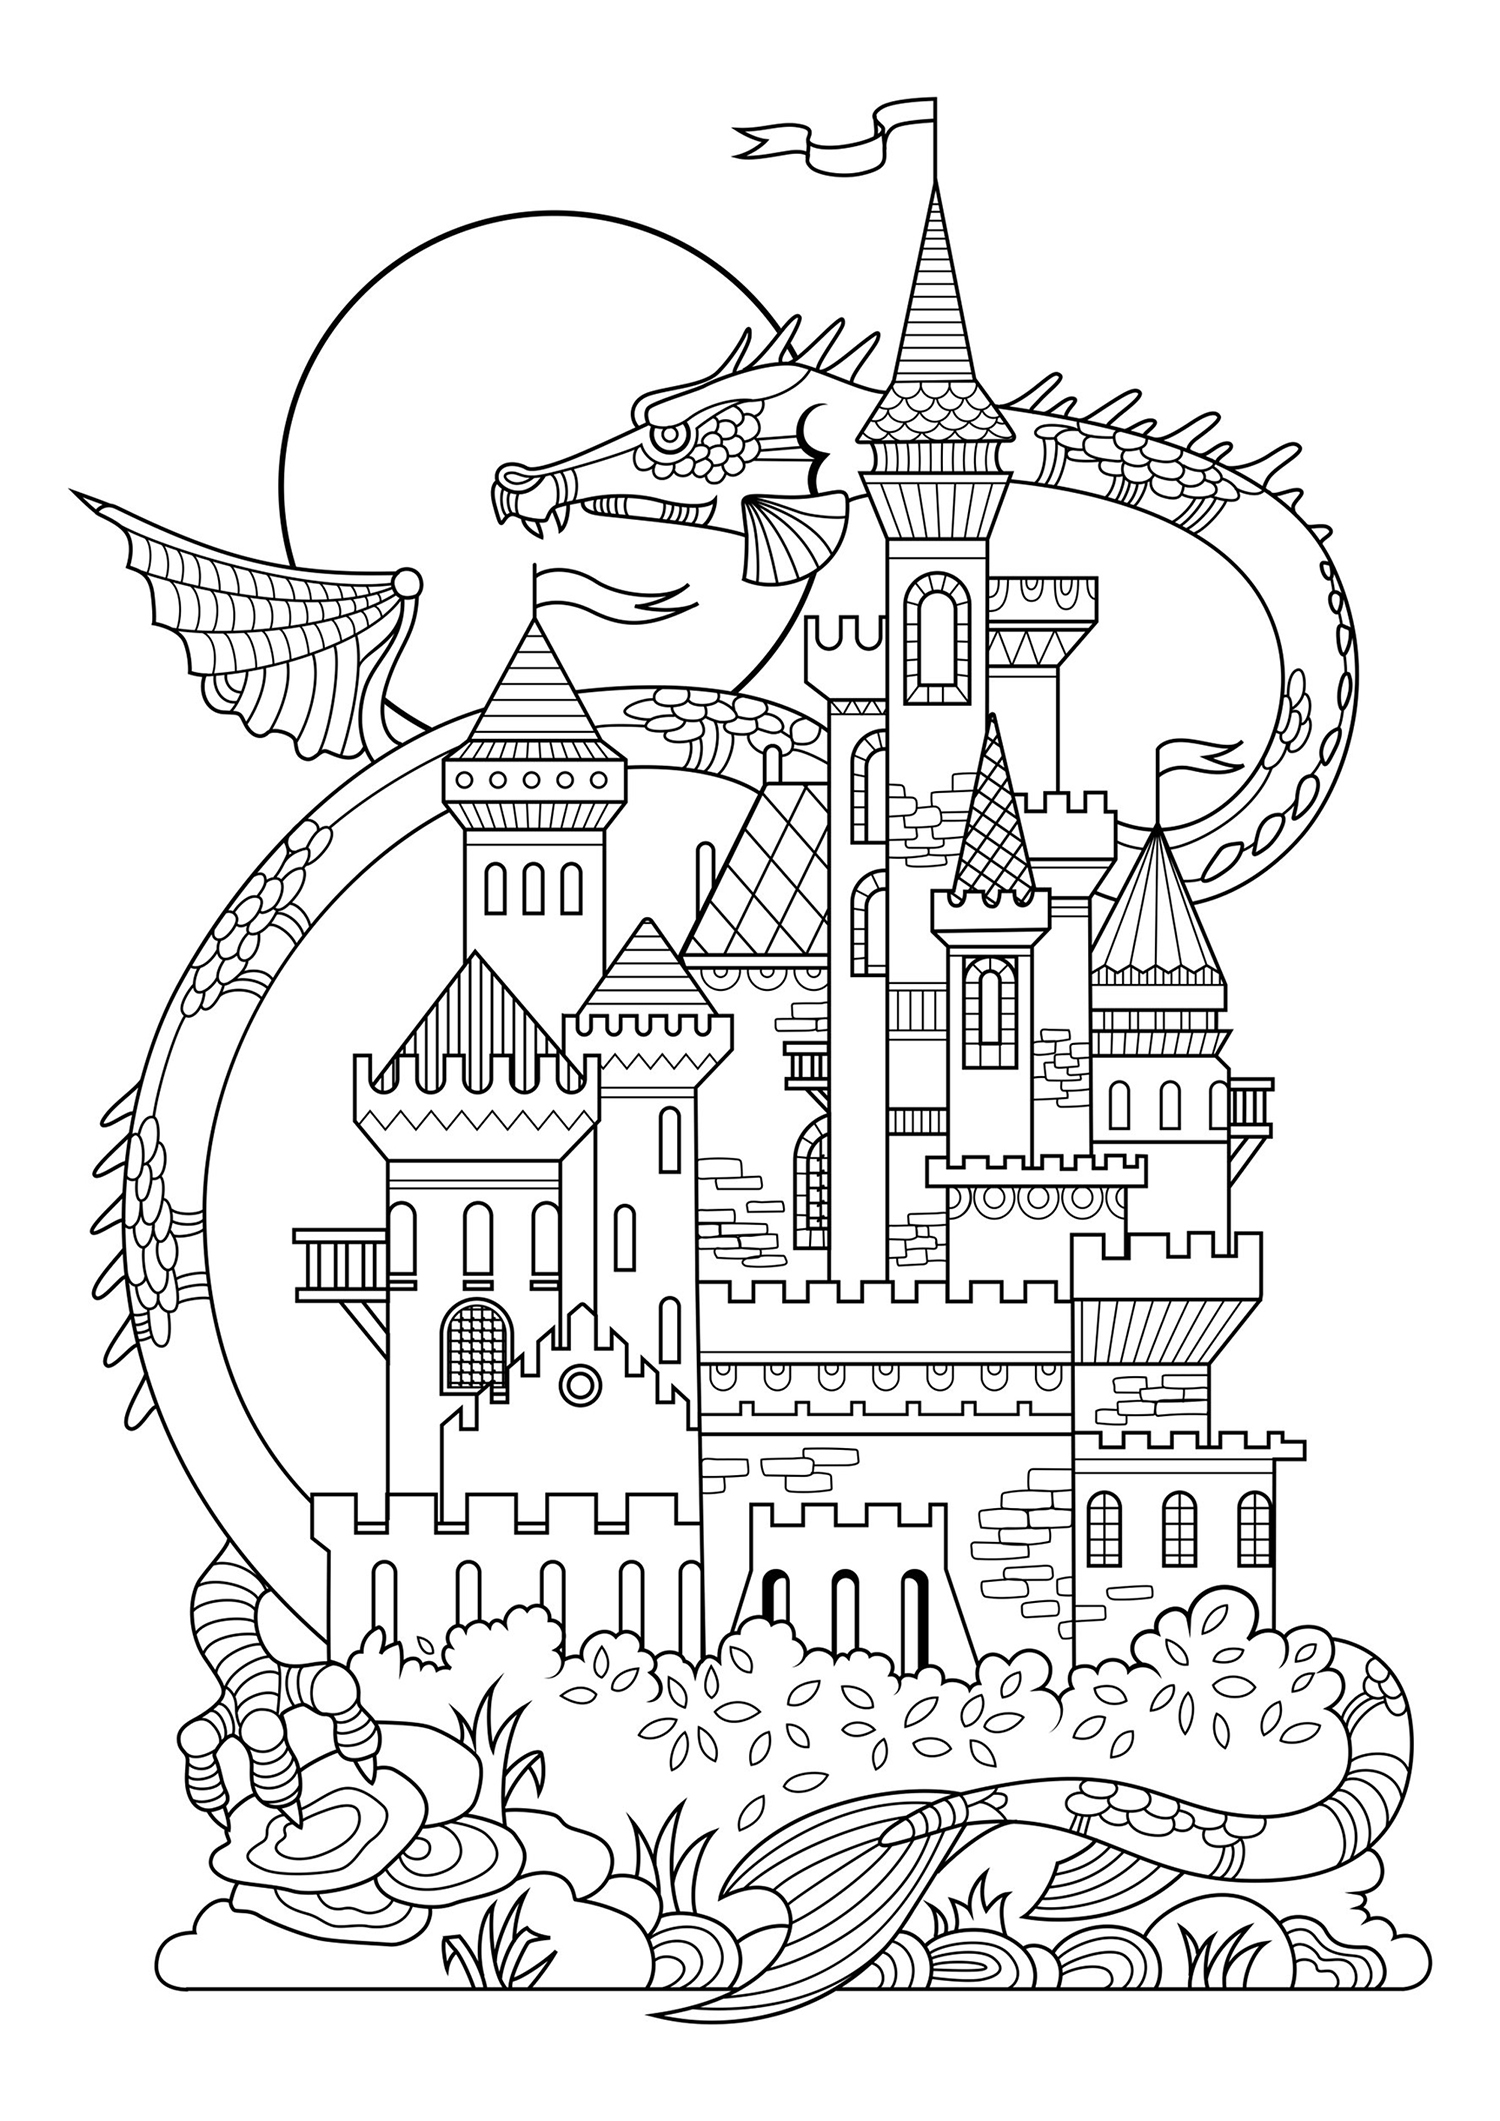 Um bonito castelo de conto de fadas, com um dragão gigante ao fundo!, Fonte : 123rf   Artista : Alexpokusay